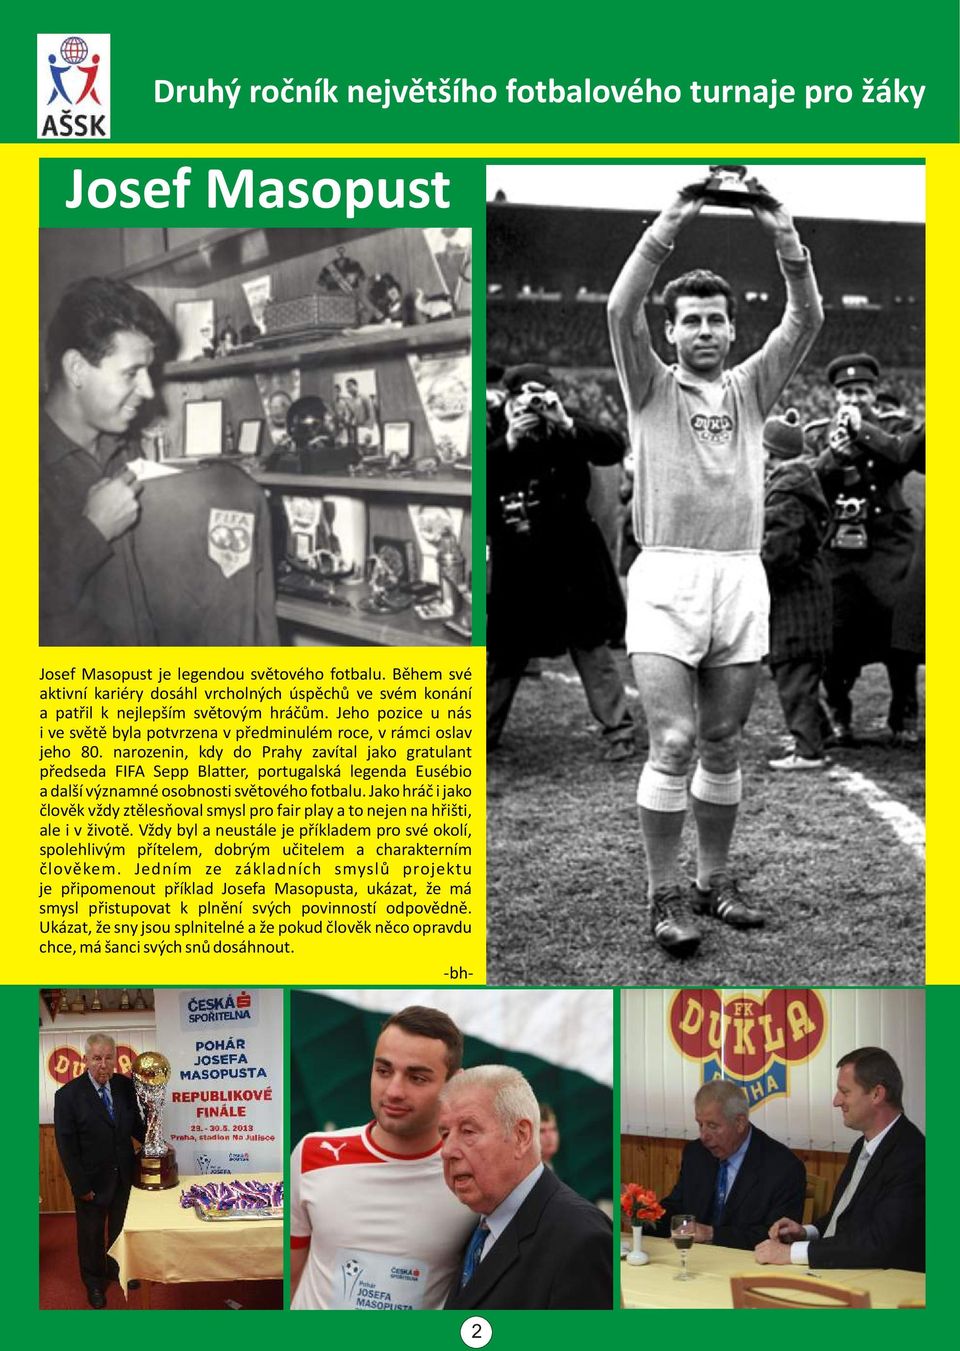 narozenin, kdy do Prahy zavítal jako gratulant pøedseda FIFA Sepp Blatter, portugalská legenda Eusébio a další významné osobnosti svìtového fotbalu.